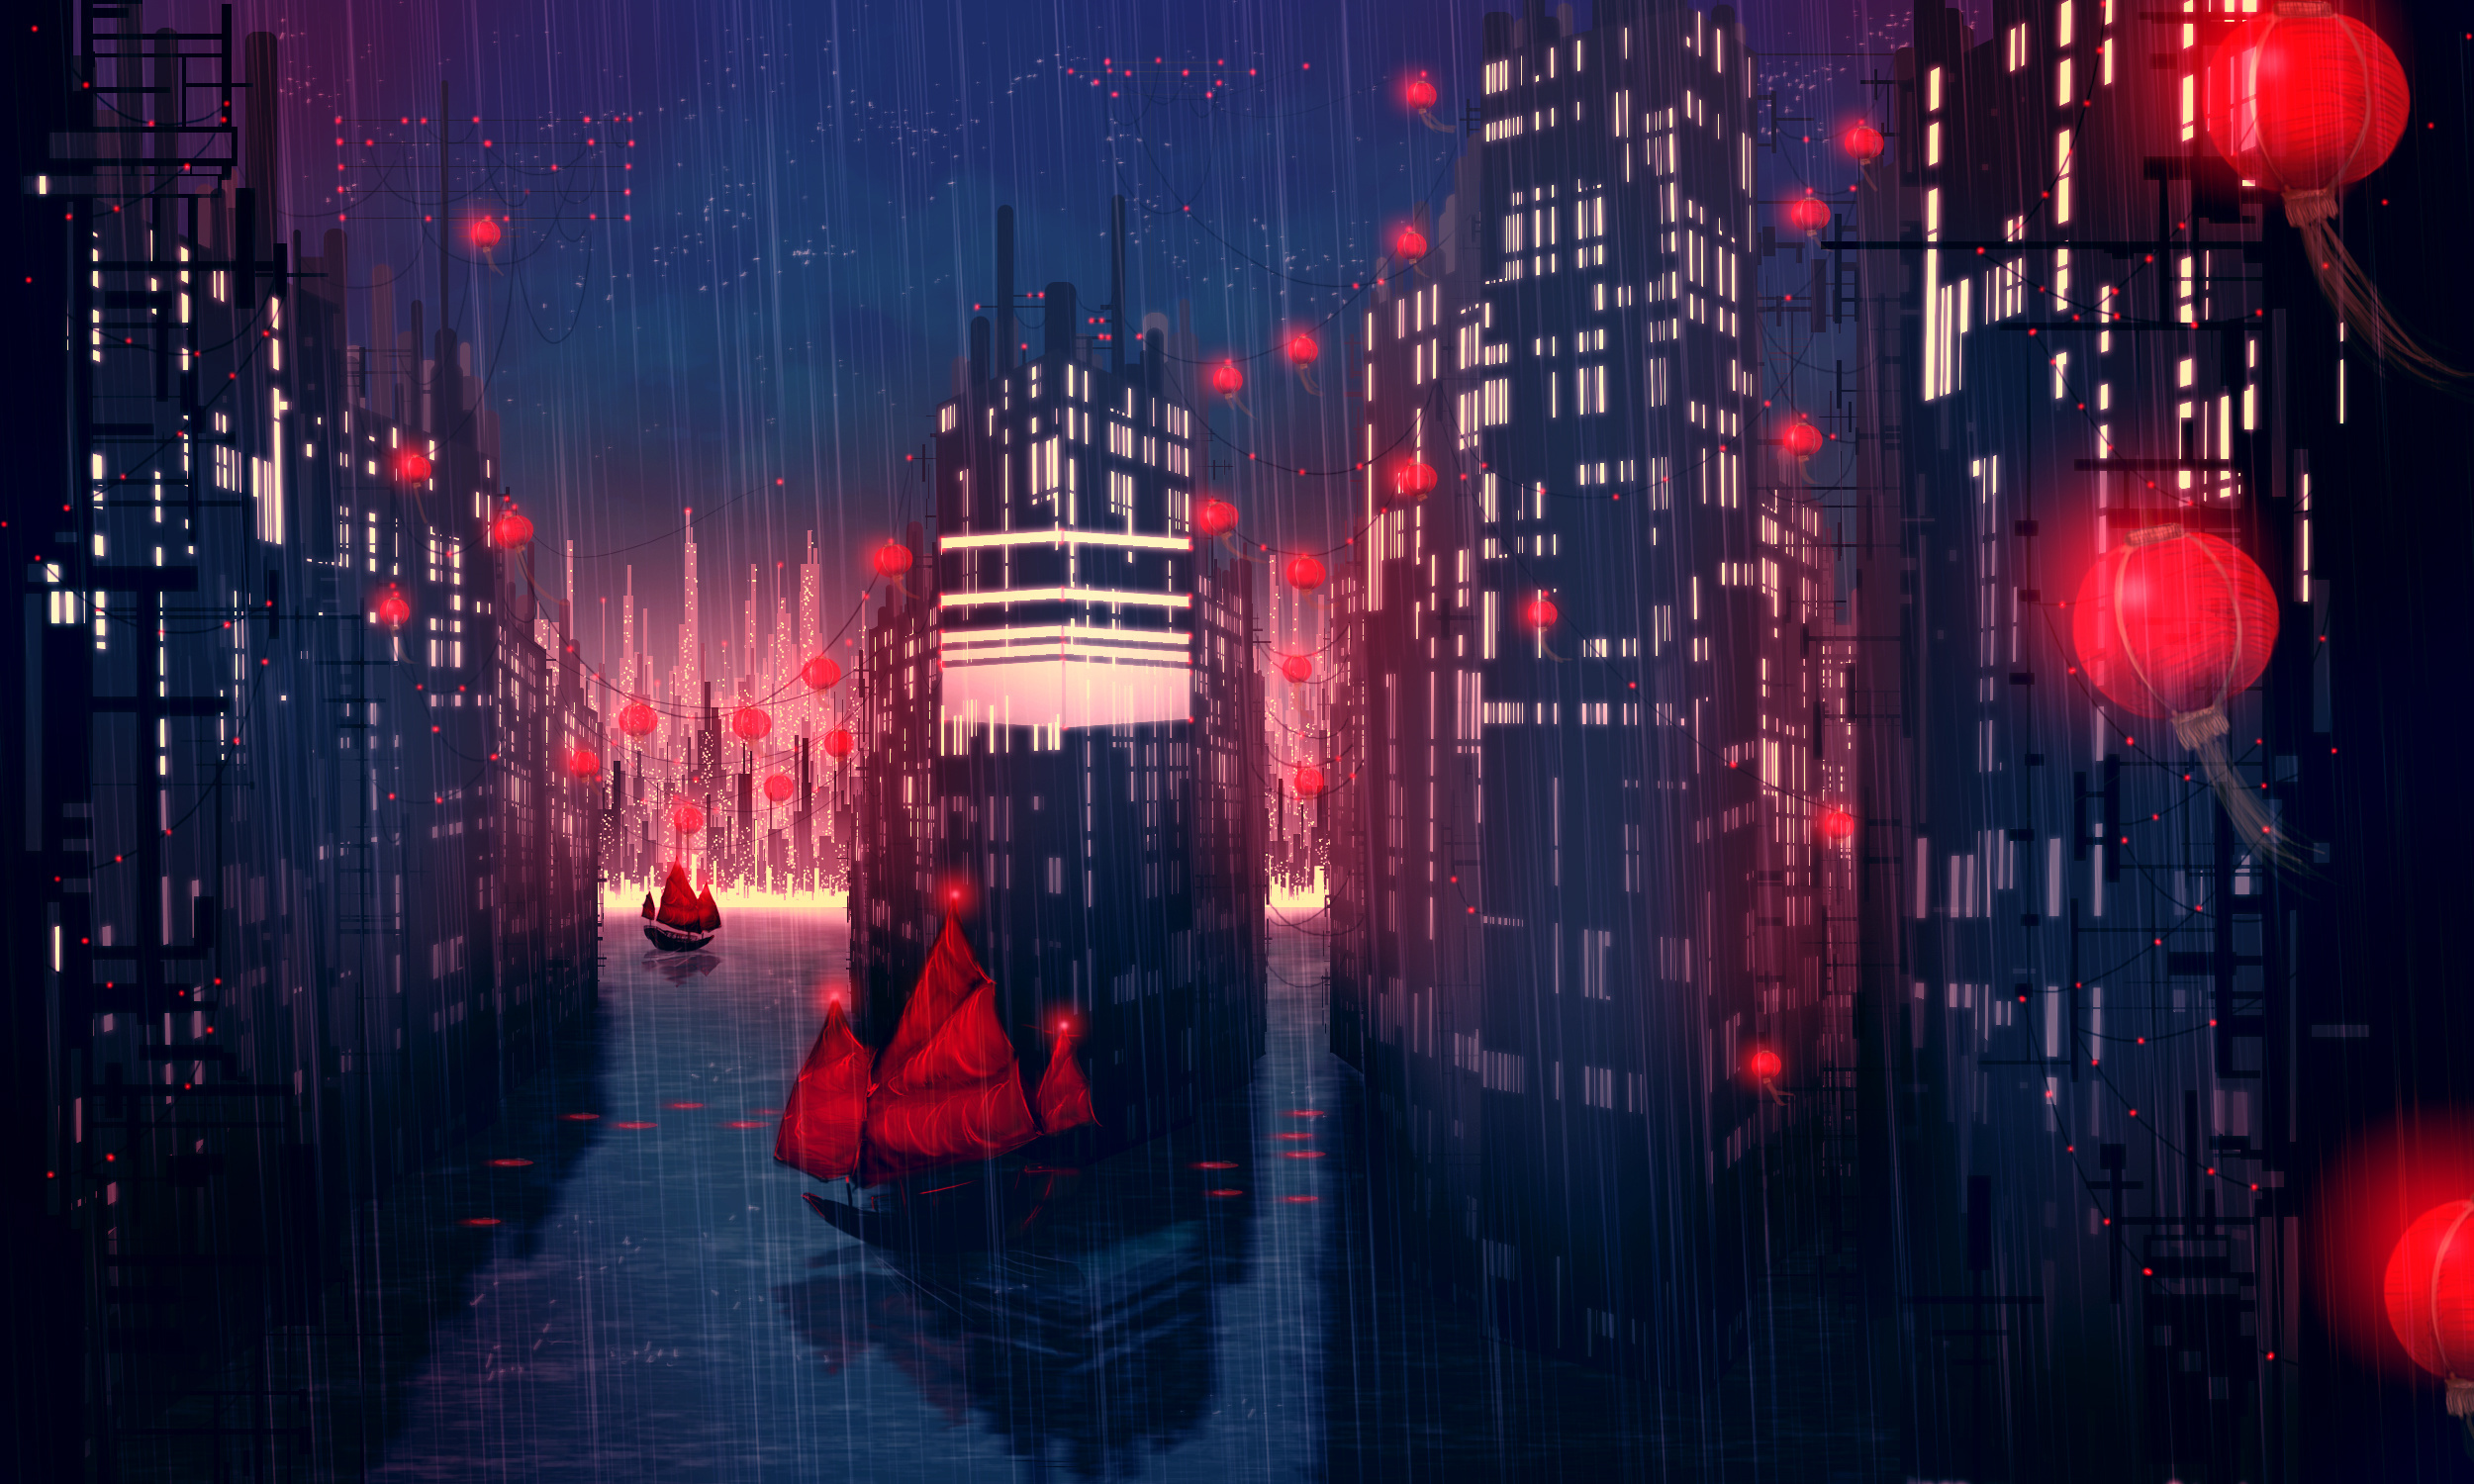 Дождь в городе